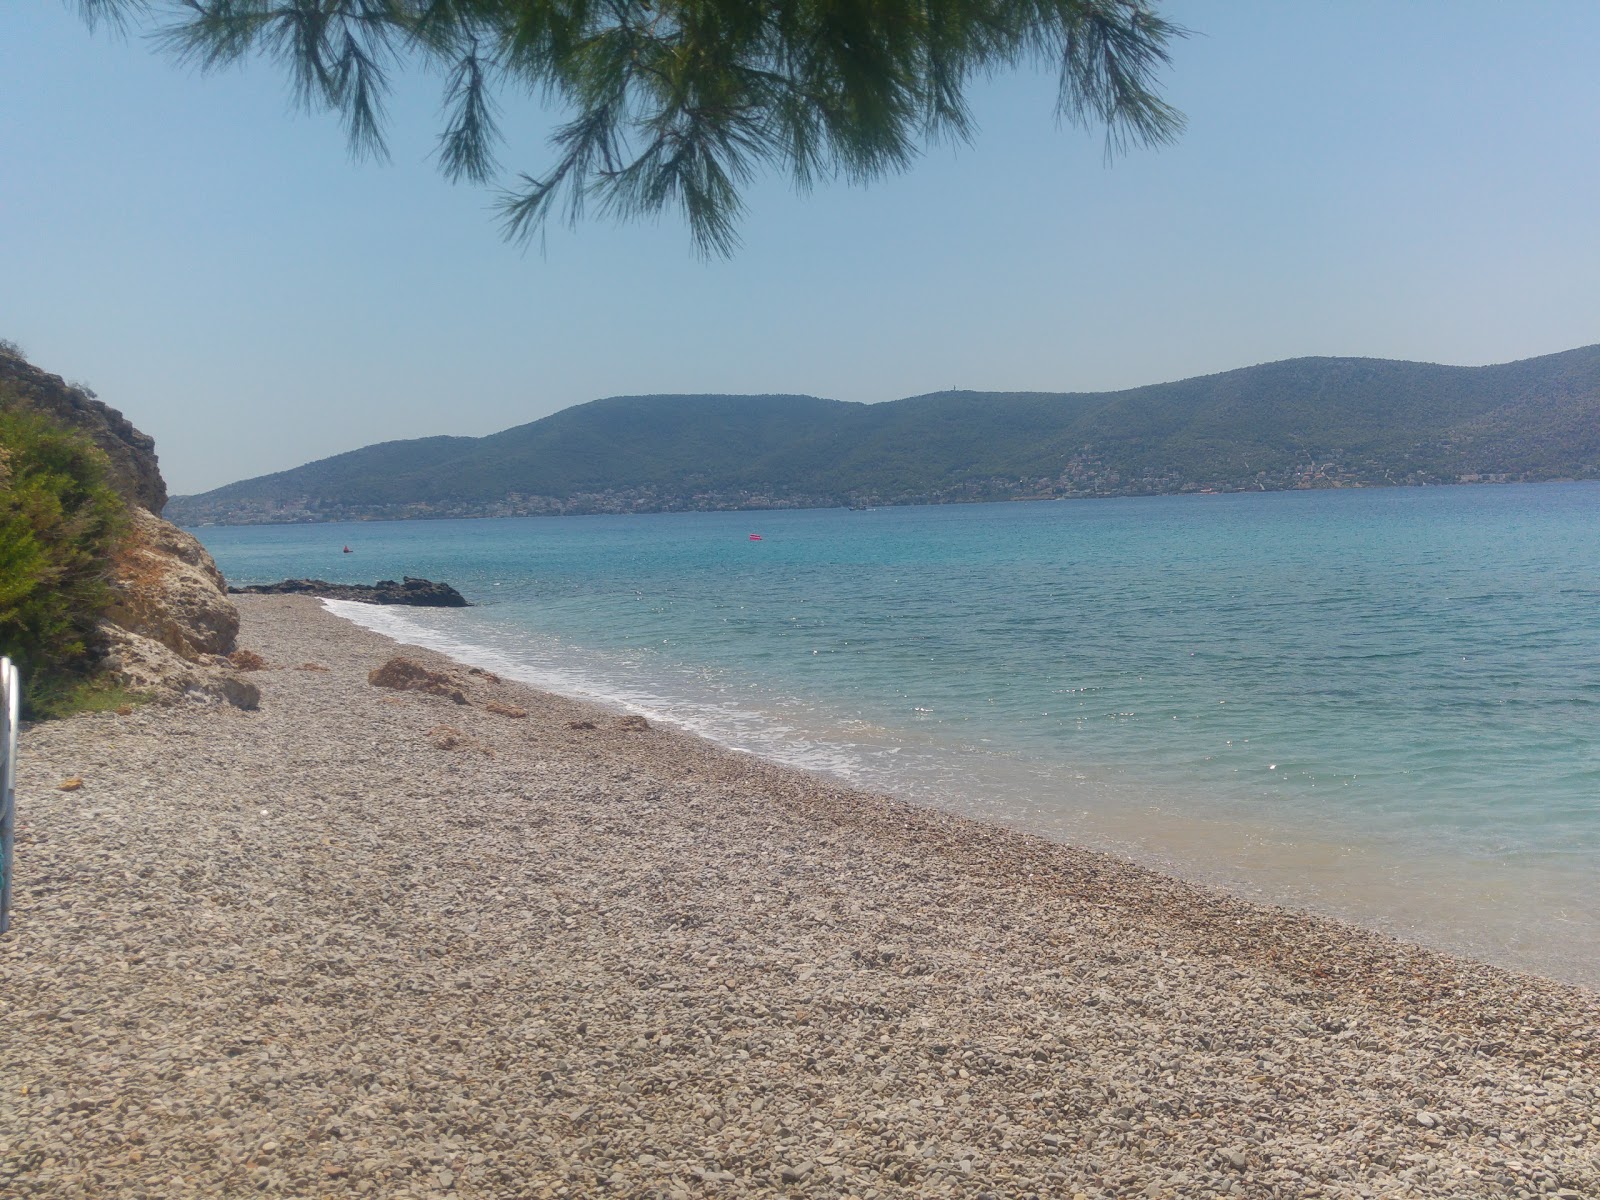 Paralia Christos'in fotoğrafı hafif ince çakıl taş yüzey ile